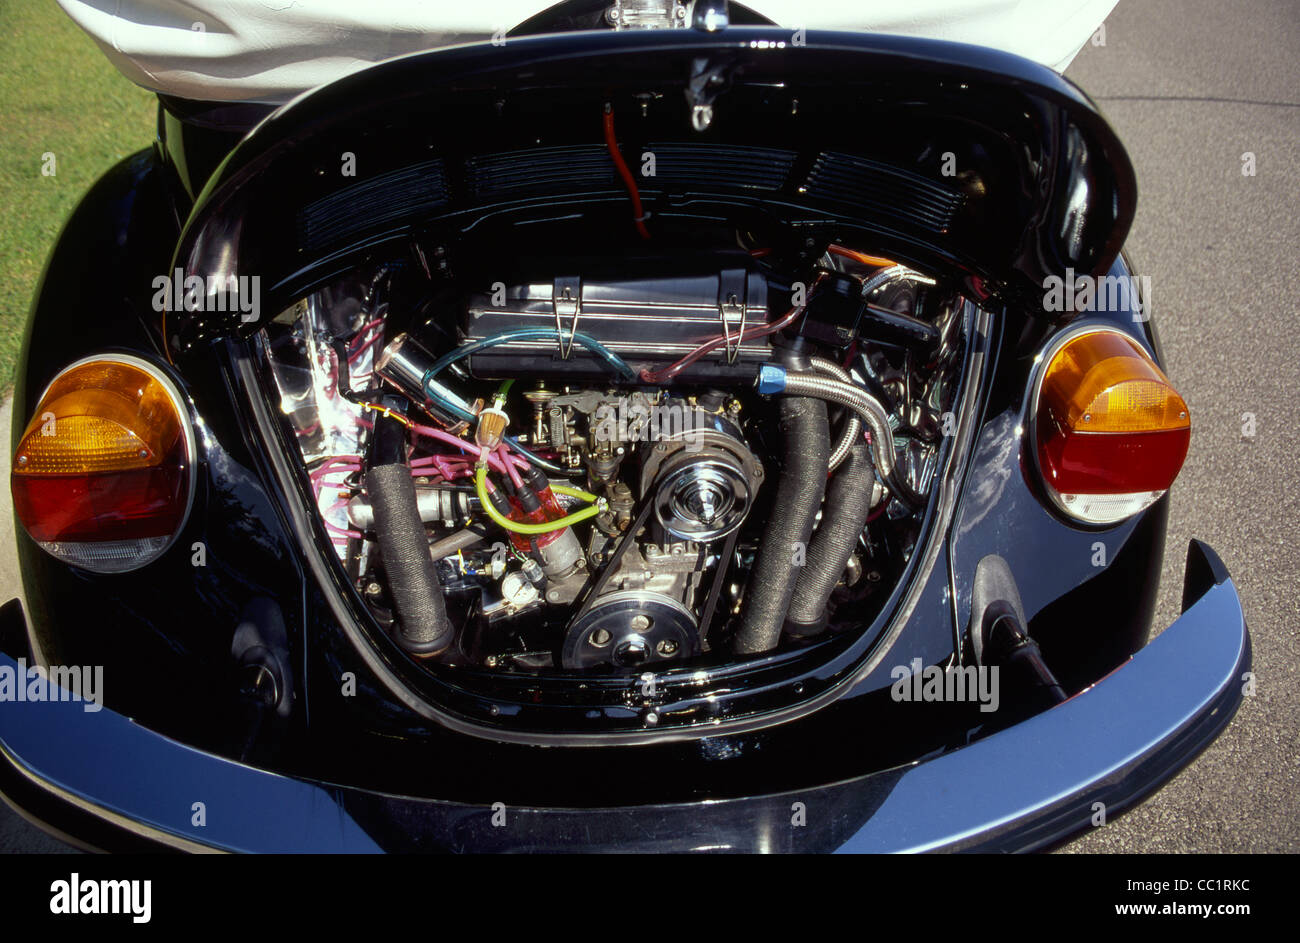 1974 Volkswagen engine Stock Photo